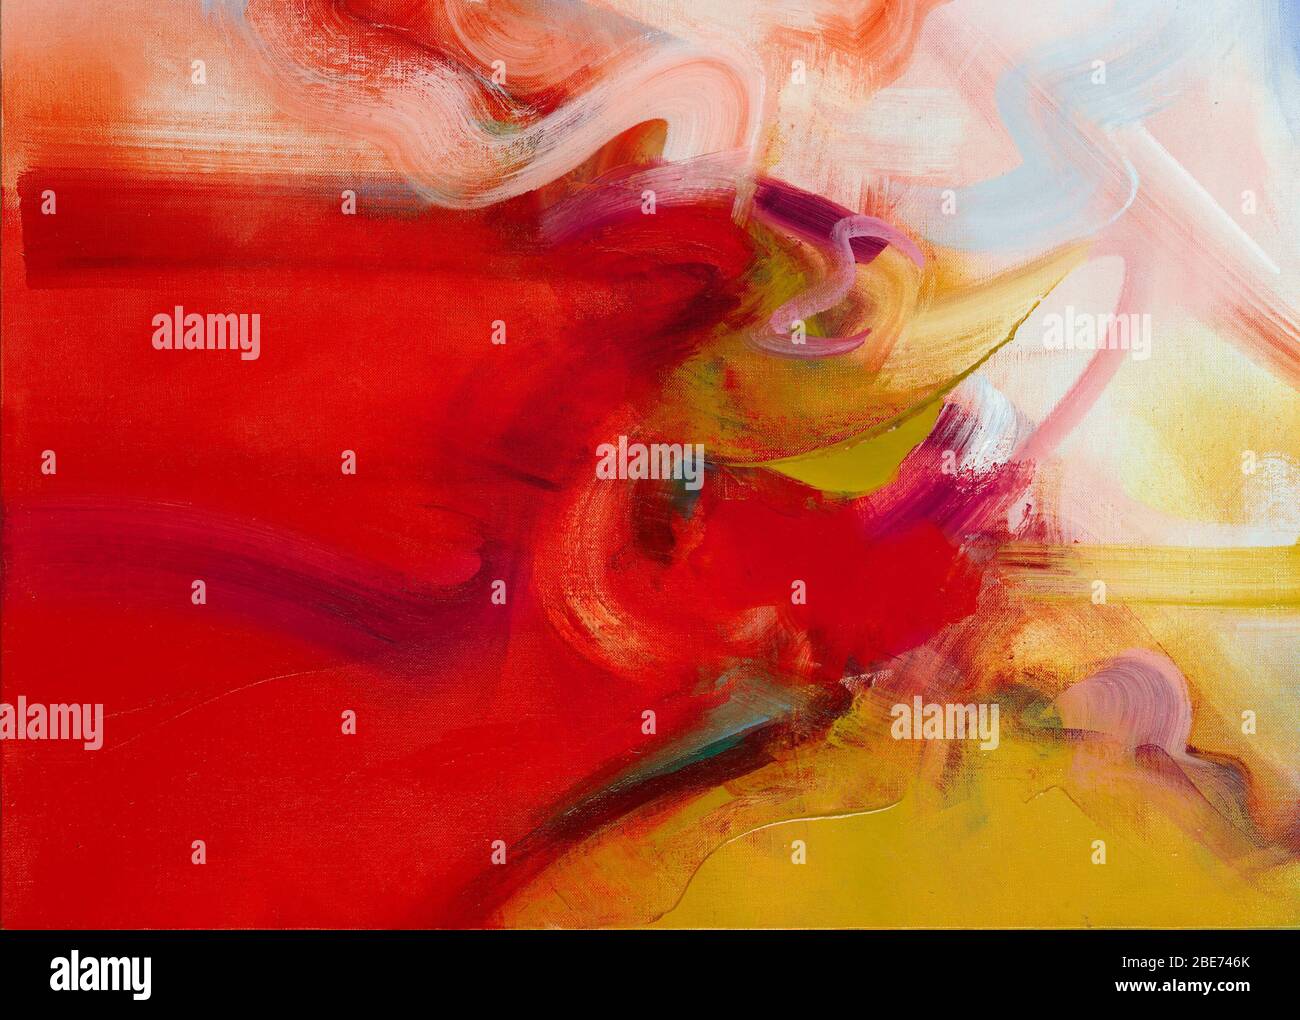 Details aus einem mega-kommissionskunstwerk, ätherische Gesturenabstraktion in Rot, Weiß und Ocker. Panorama und energiegeladen, ideal für die Musikindustrie Stockfoto